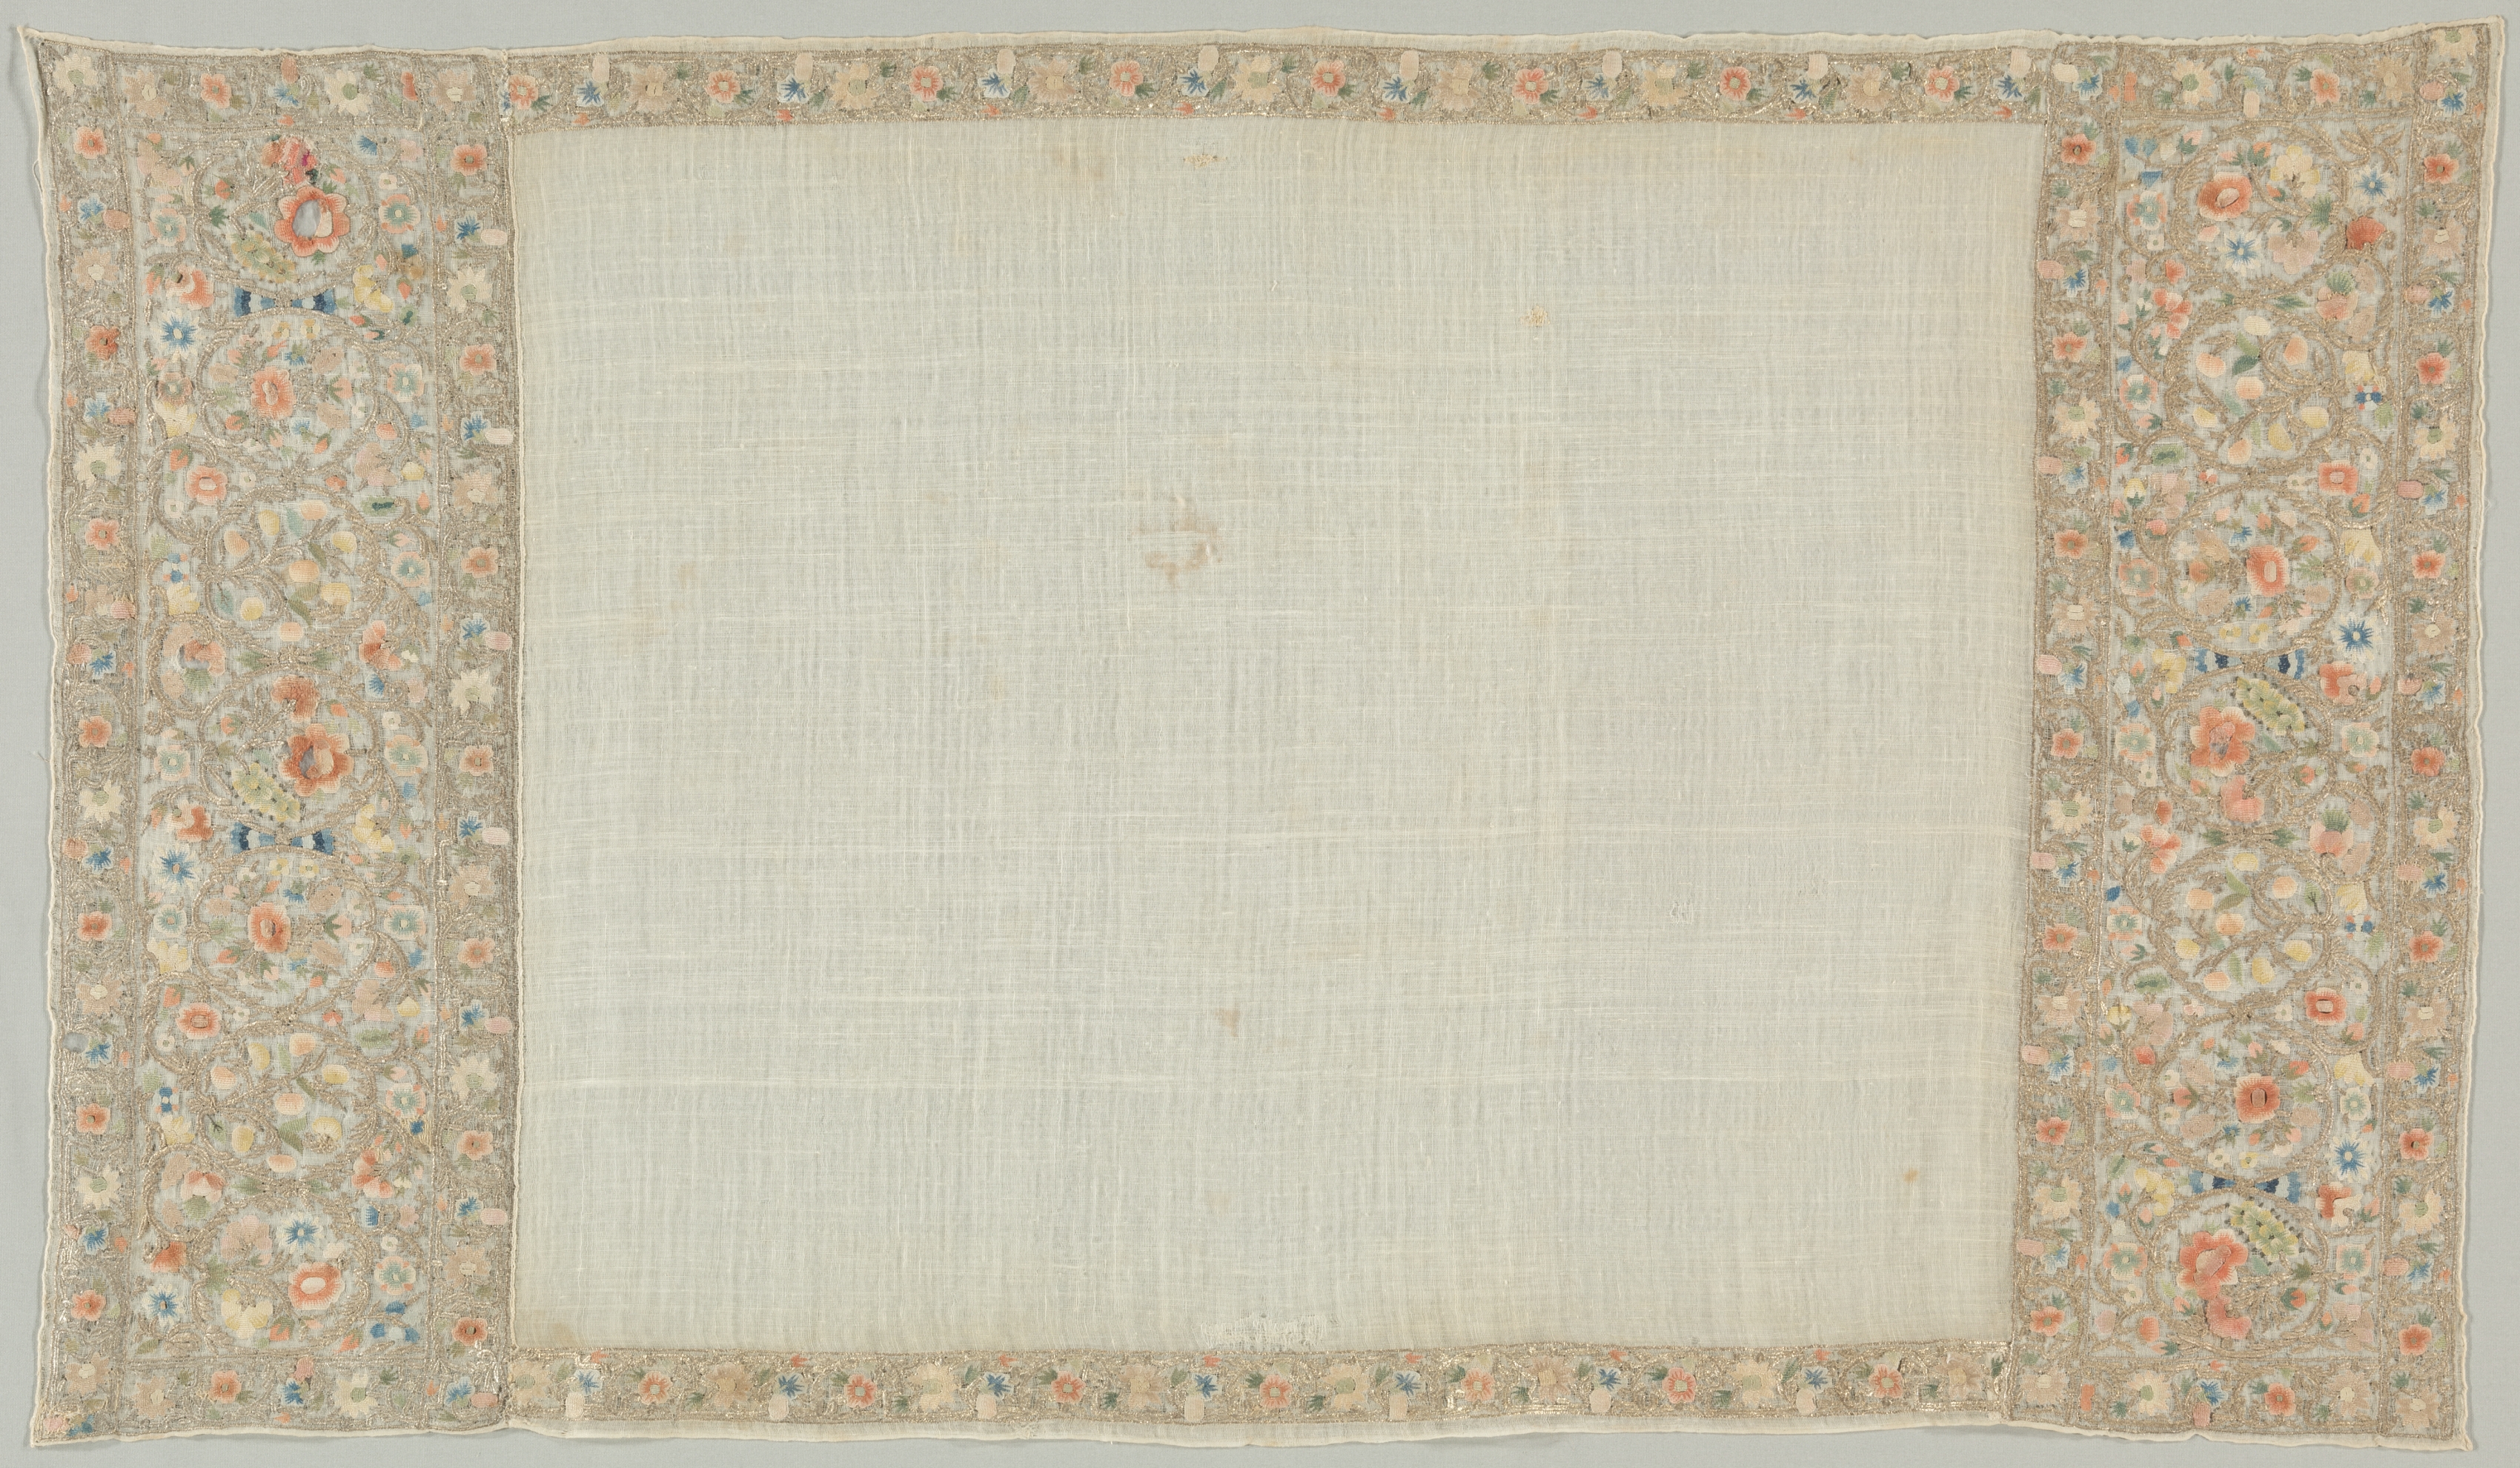 Embroidered Towel (Peshkir)